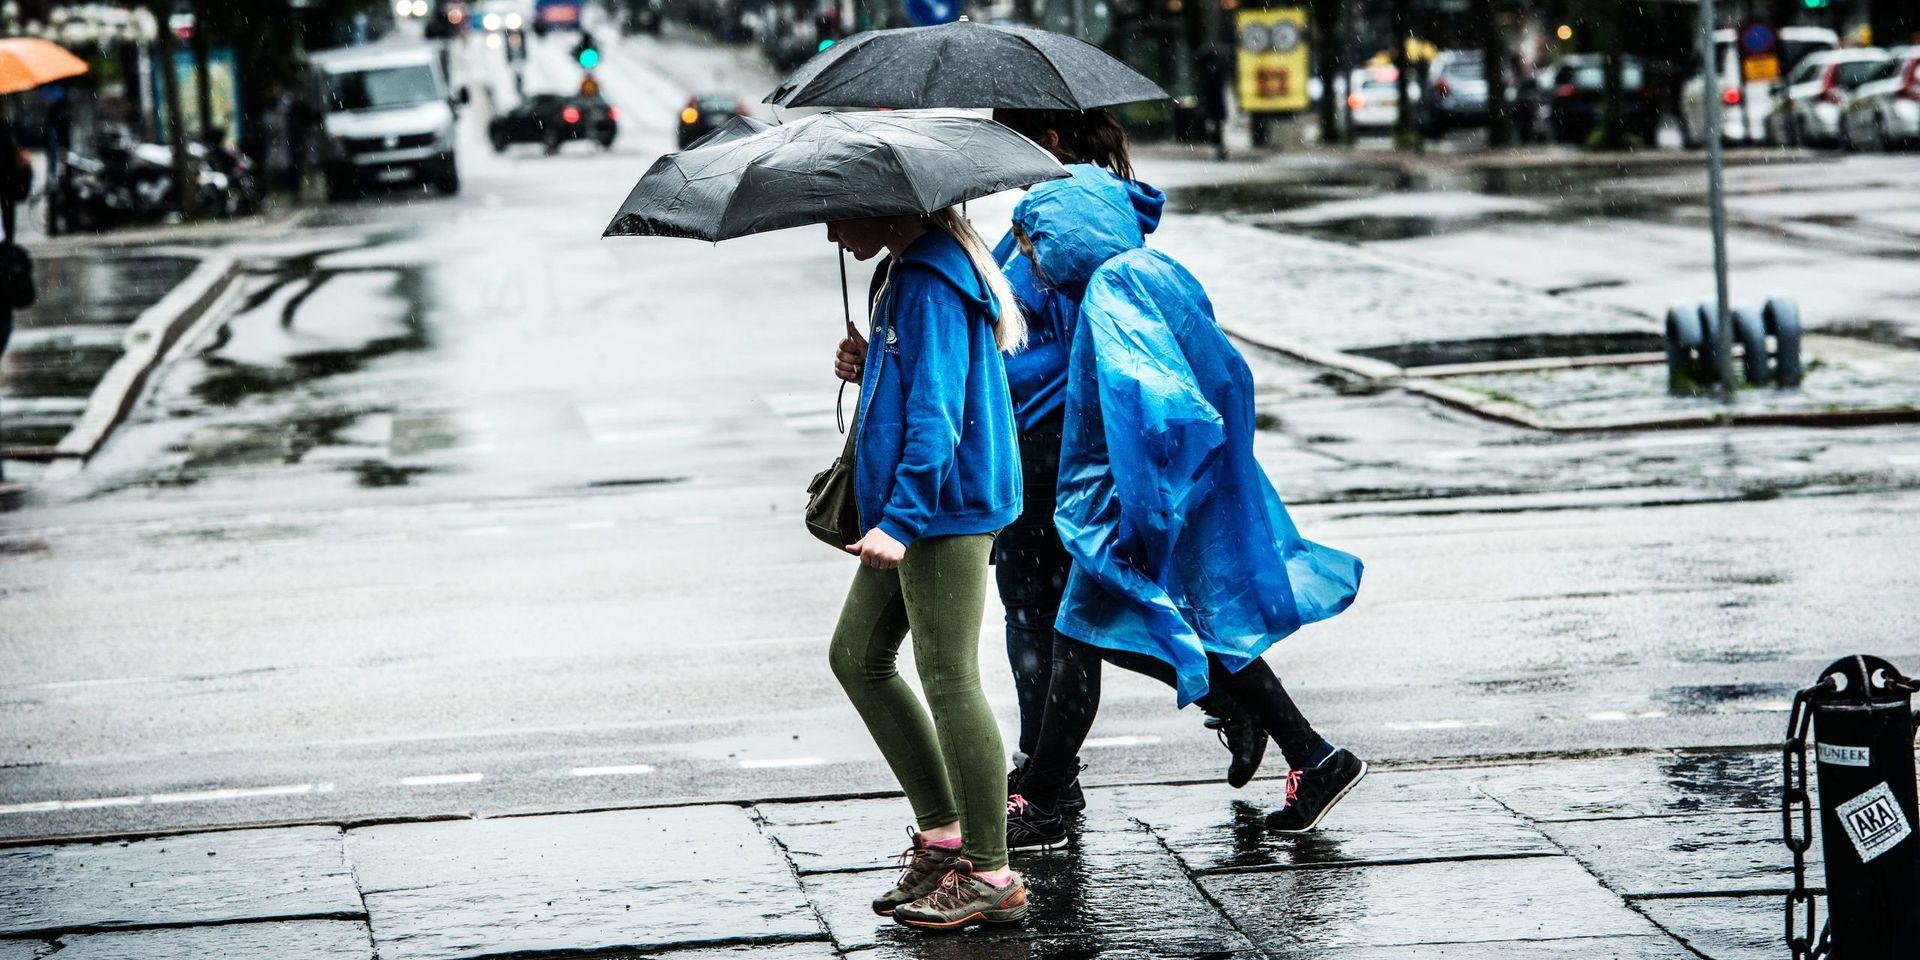 Det regnar i snitt var tredje dag i Göteborg.